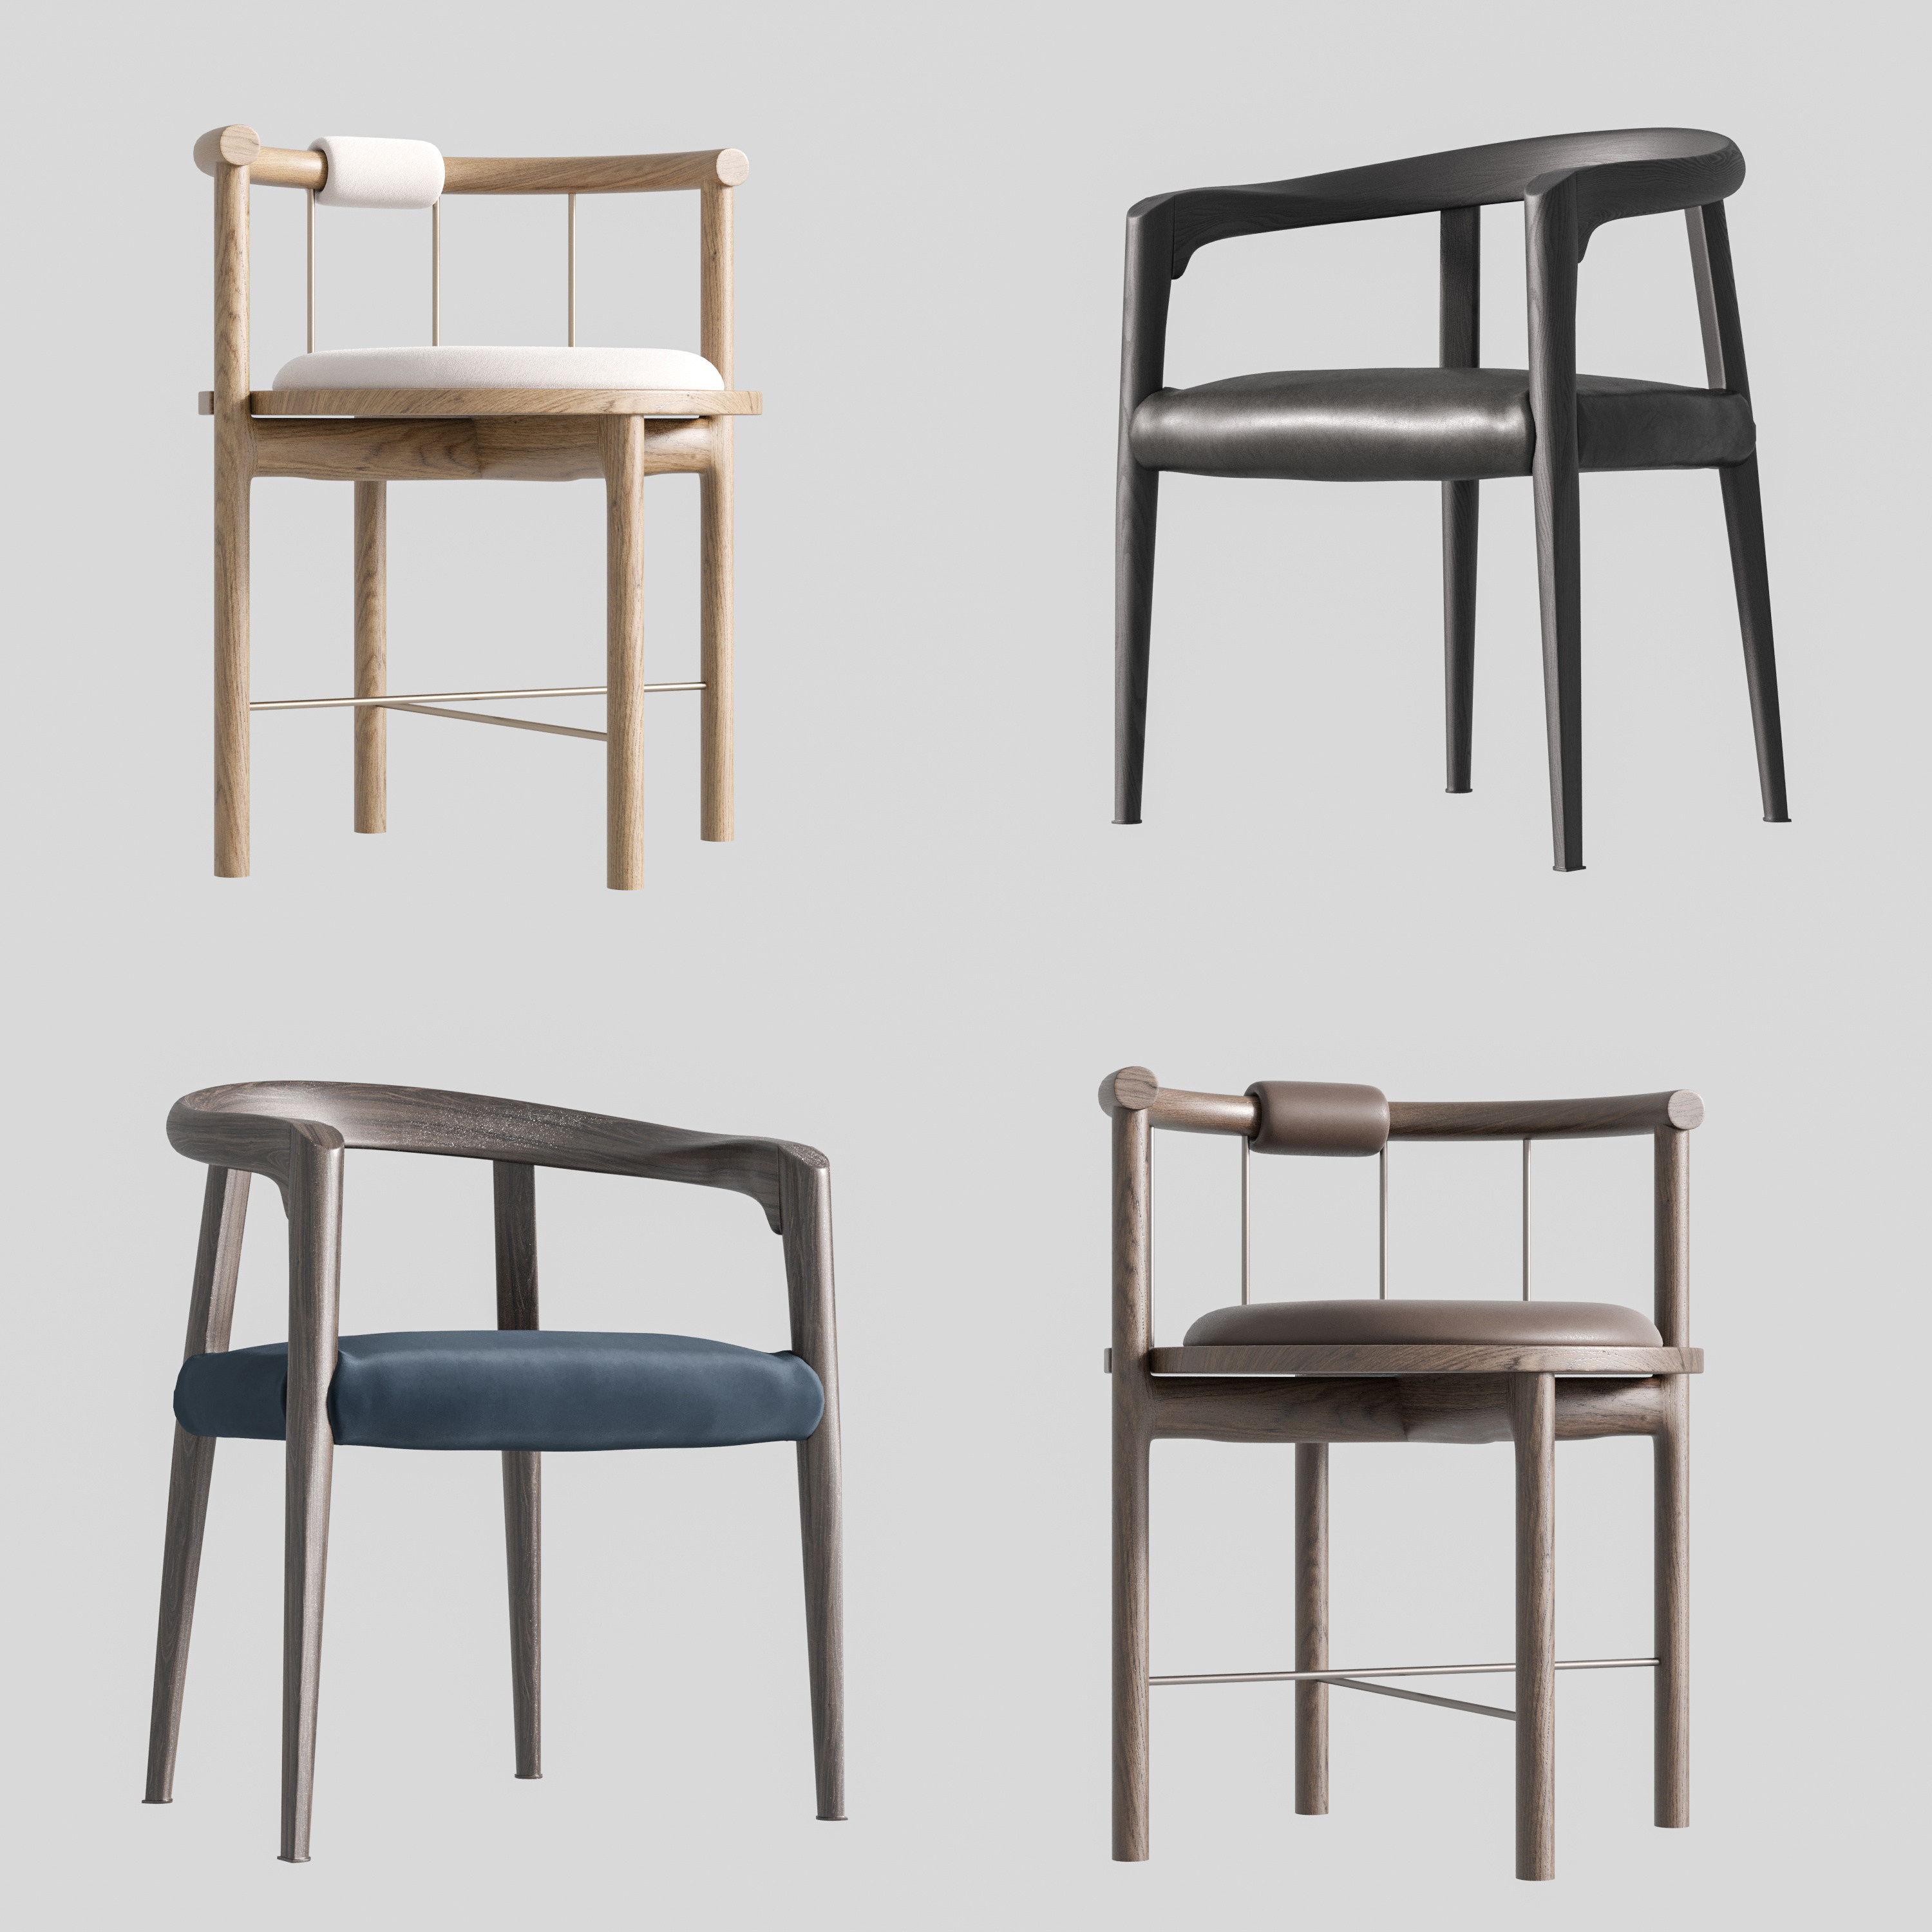 33新中式单椅组合餐椅,茶室座椅,北欧风座椅,现代单椅组合3d模型下载